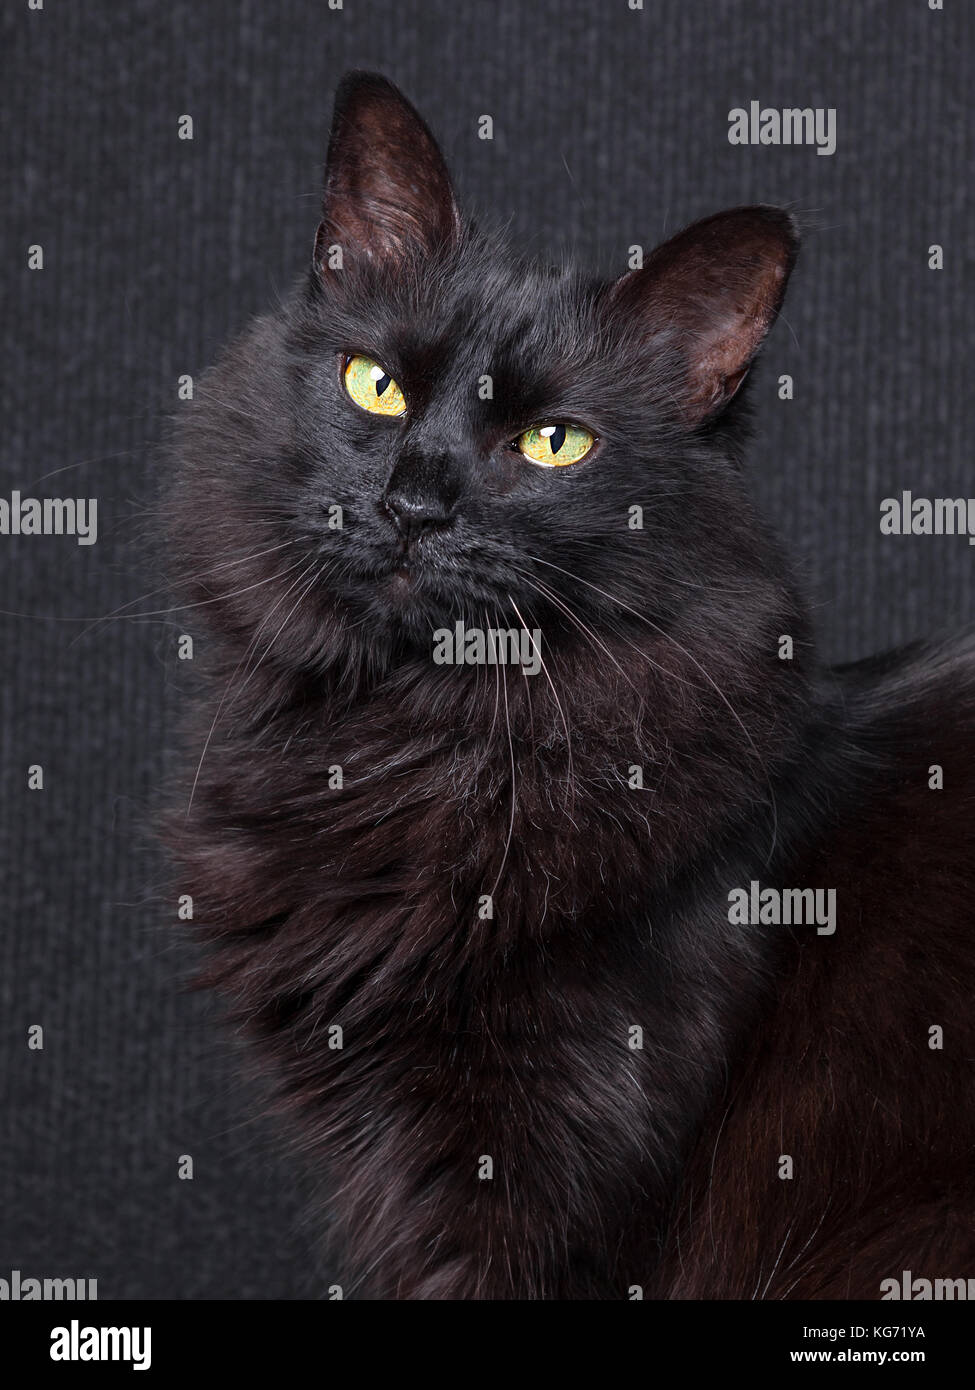 Cute black cat assis de profil, looking at camera avec yeux endormis sur un fond sombre. cheveux longs. race Angora turc femelle adulte / black cat Banque D'Images